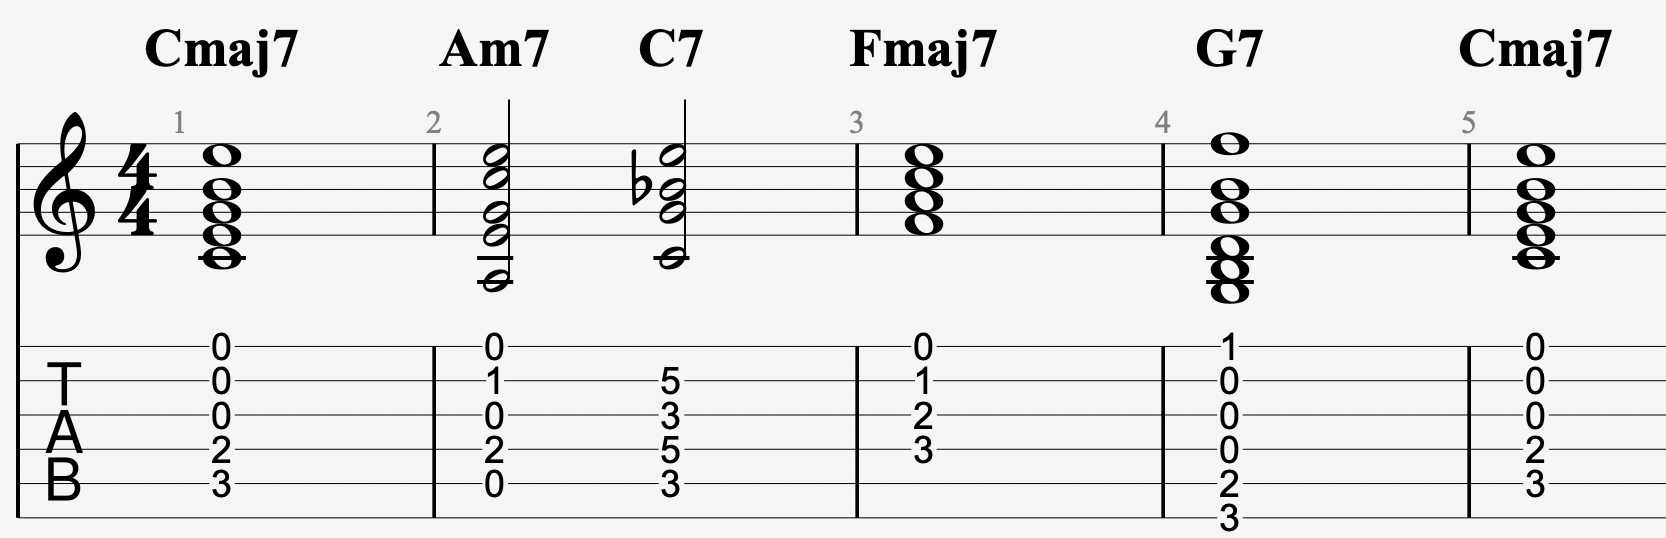 Fmaj7的次屬和弦運用